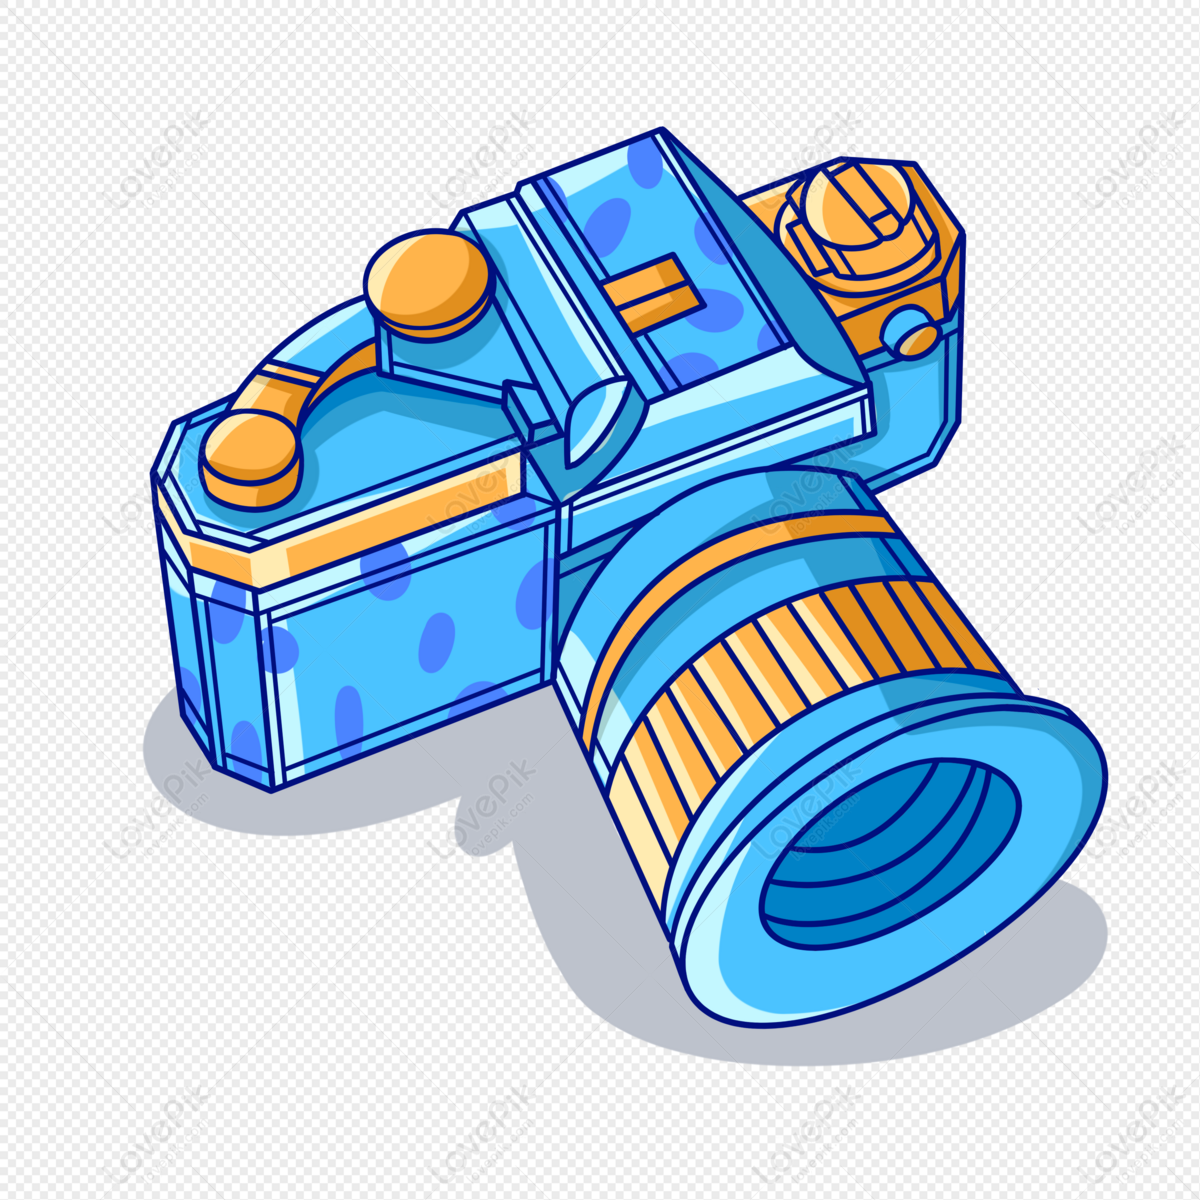 Cartoon Blue Camera Illustration, Camera Lens, Camera Vector